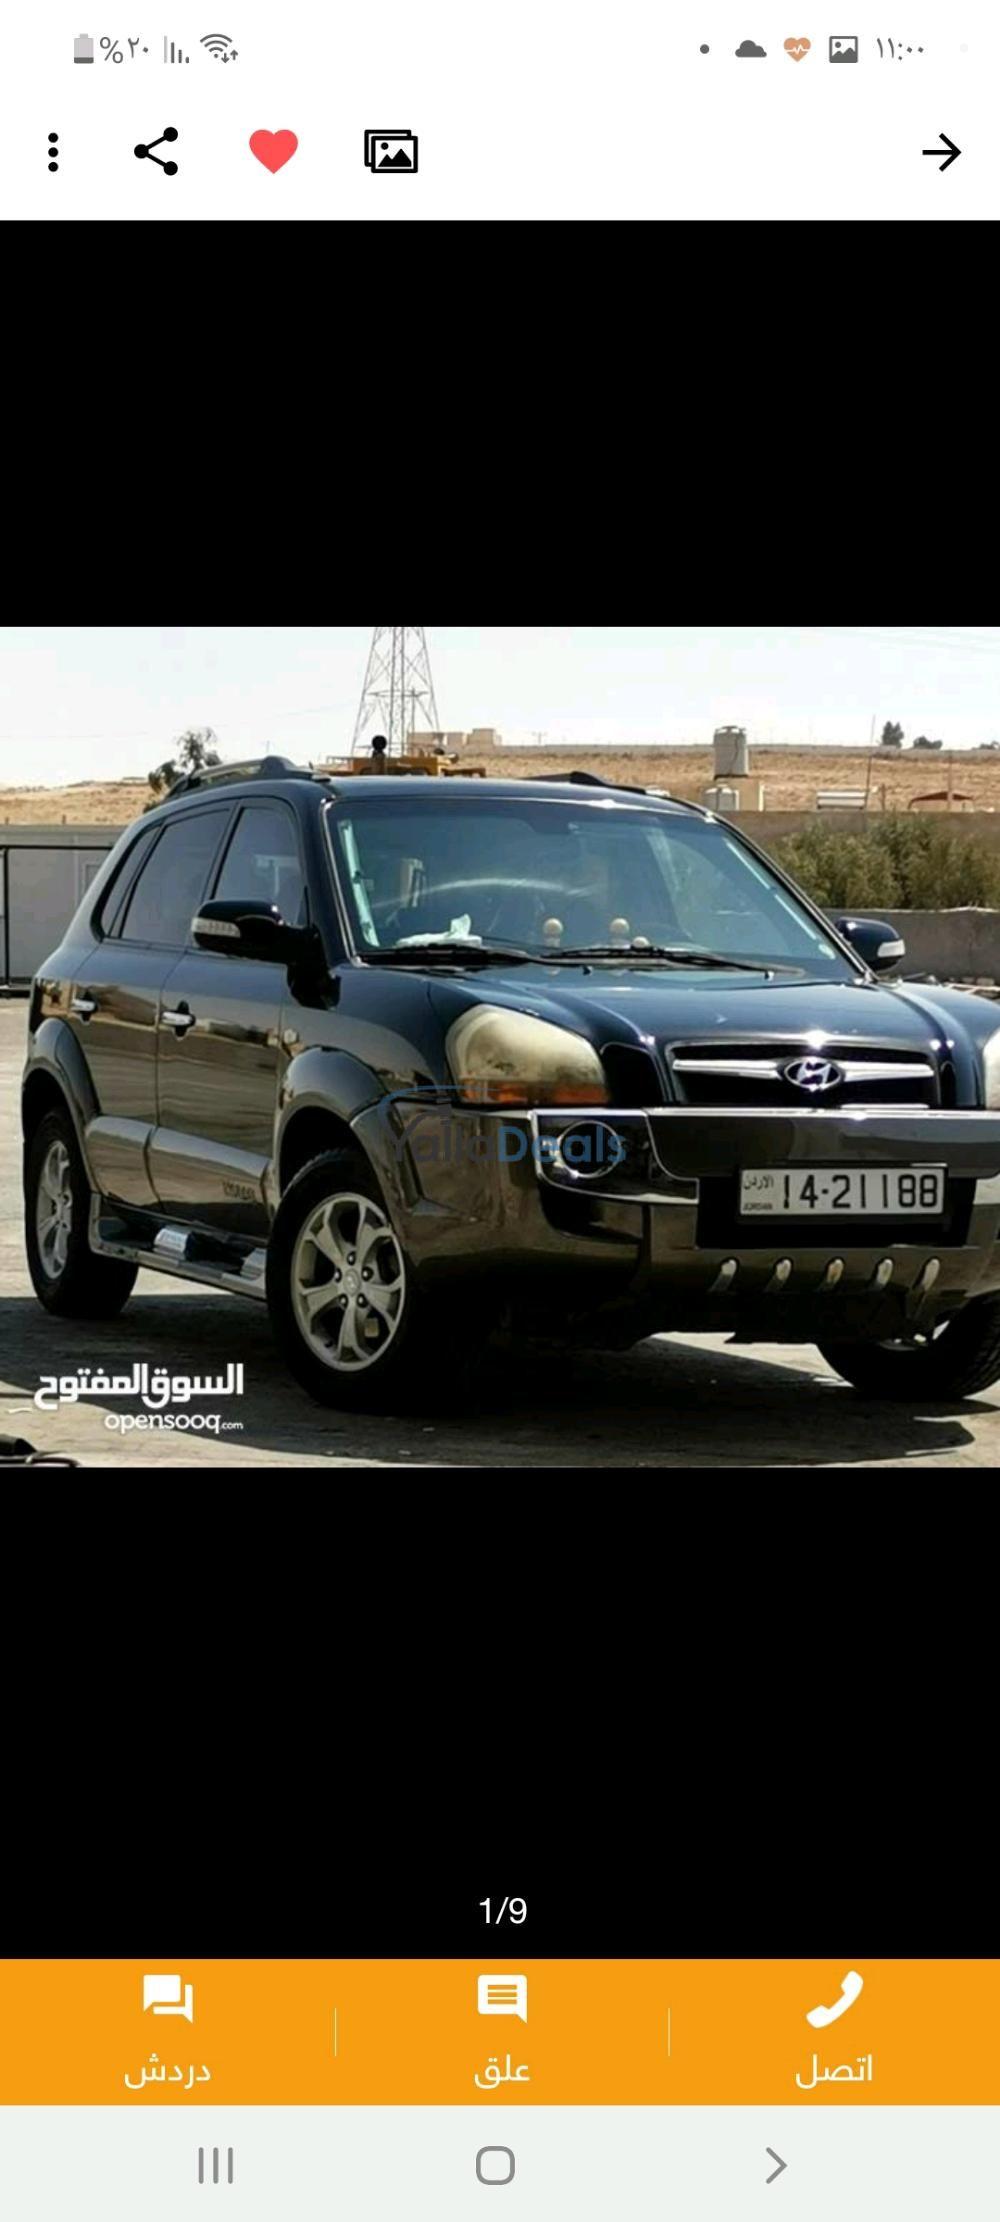 سيارات جديدة و مستعملة للبيع في الأردن. افضل العروض على السيارات ...